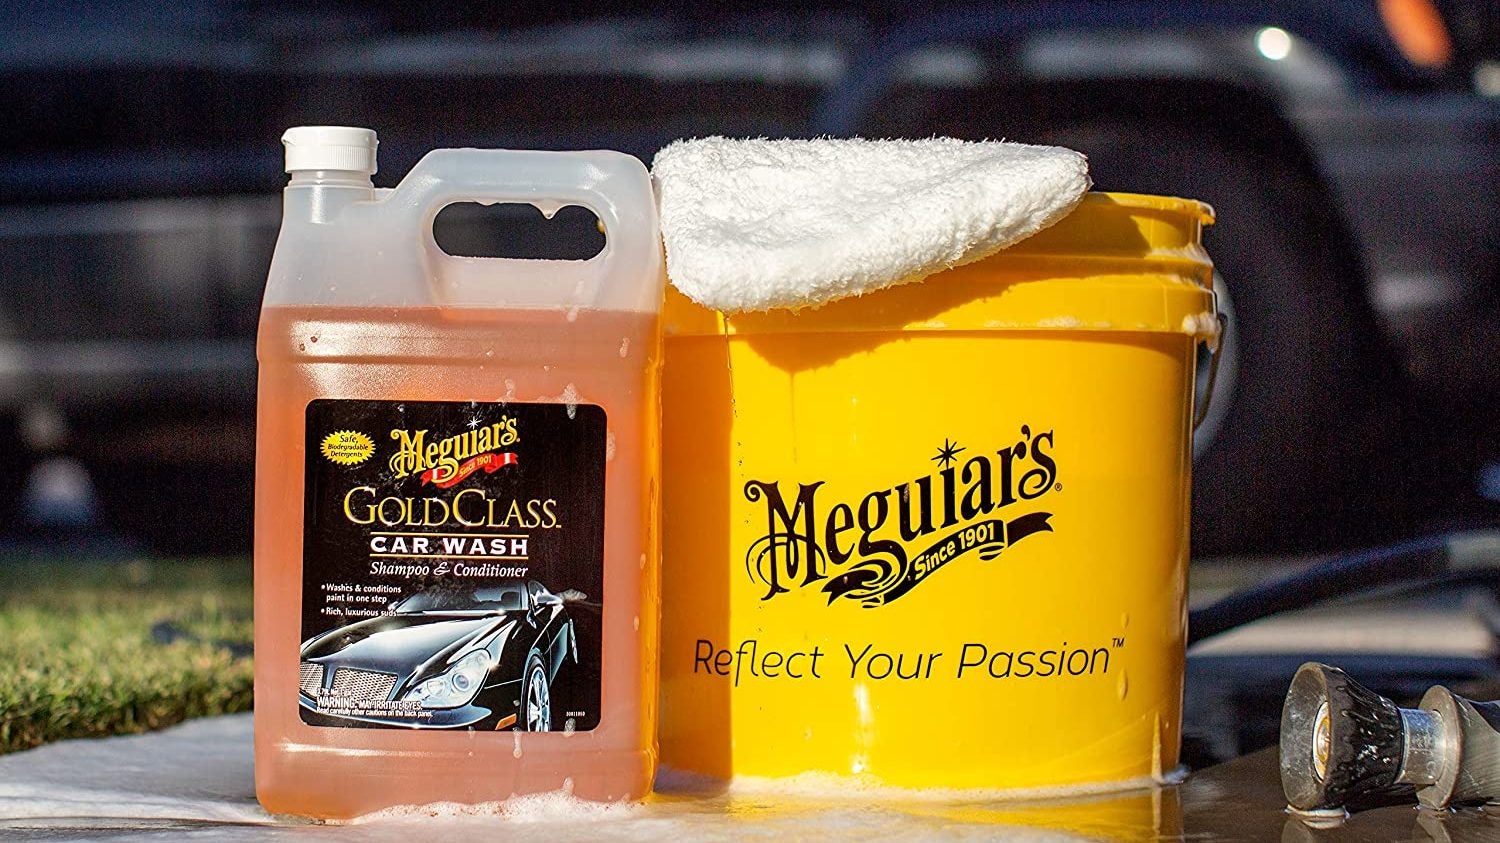 Meguiar's Gold Class Car Wash Shampoo and Conditioner Liquid 64oz